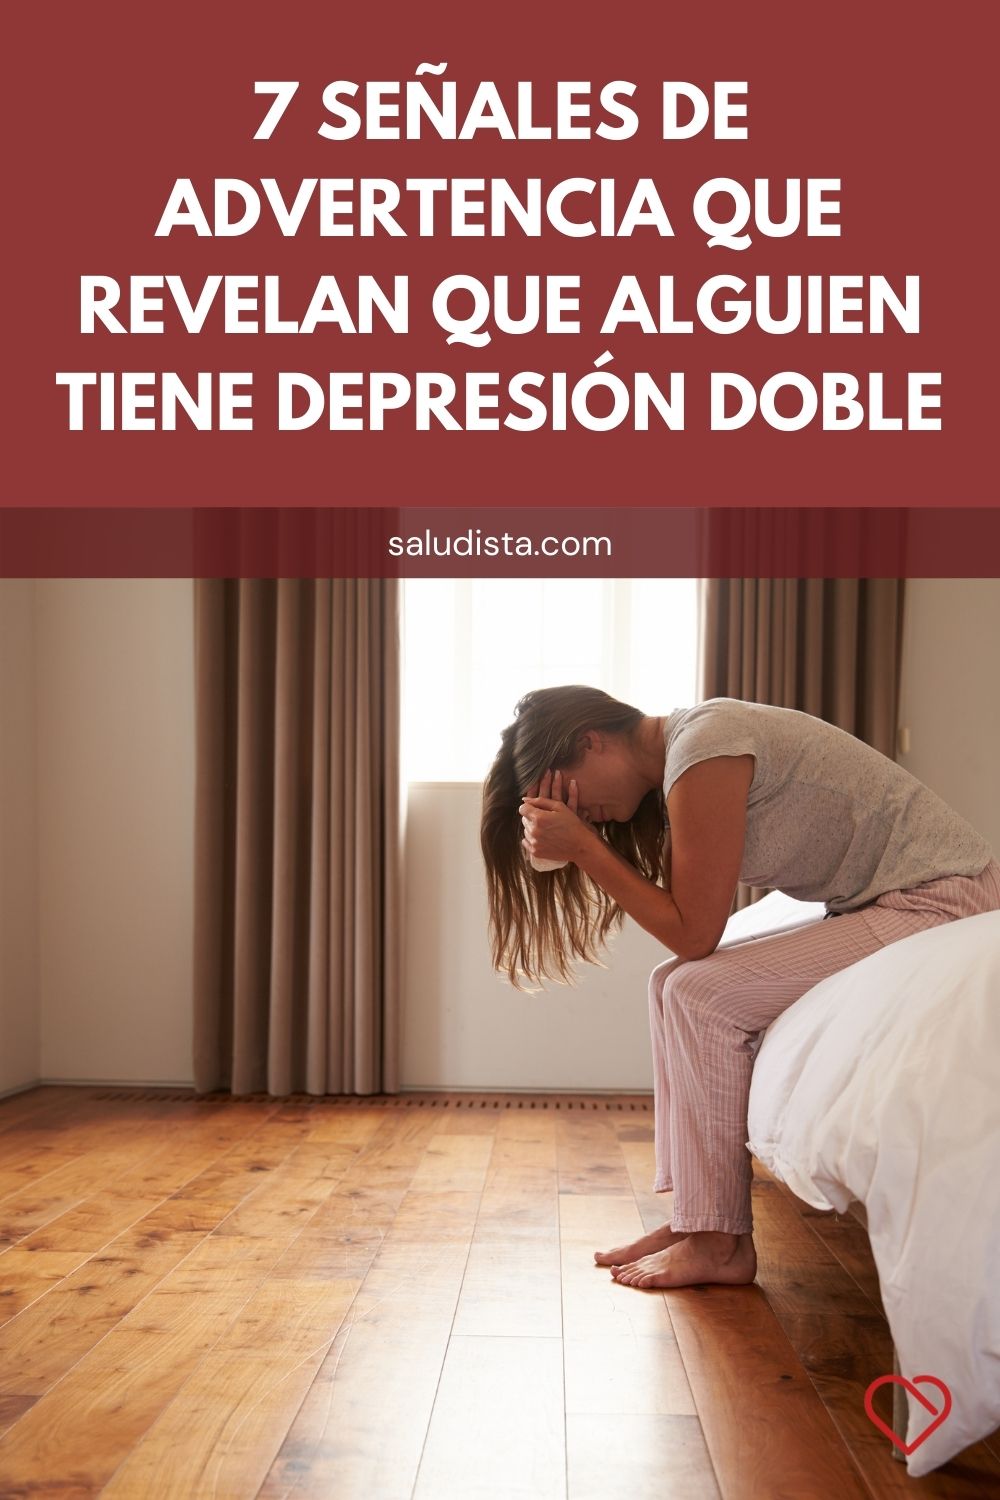 7 señales de advertencia que revelan que alguien tiene depresión doble